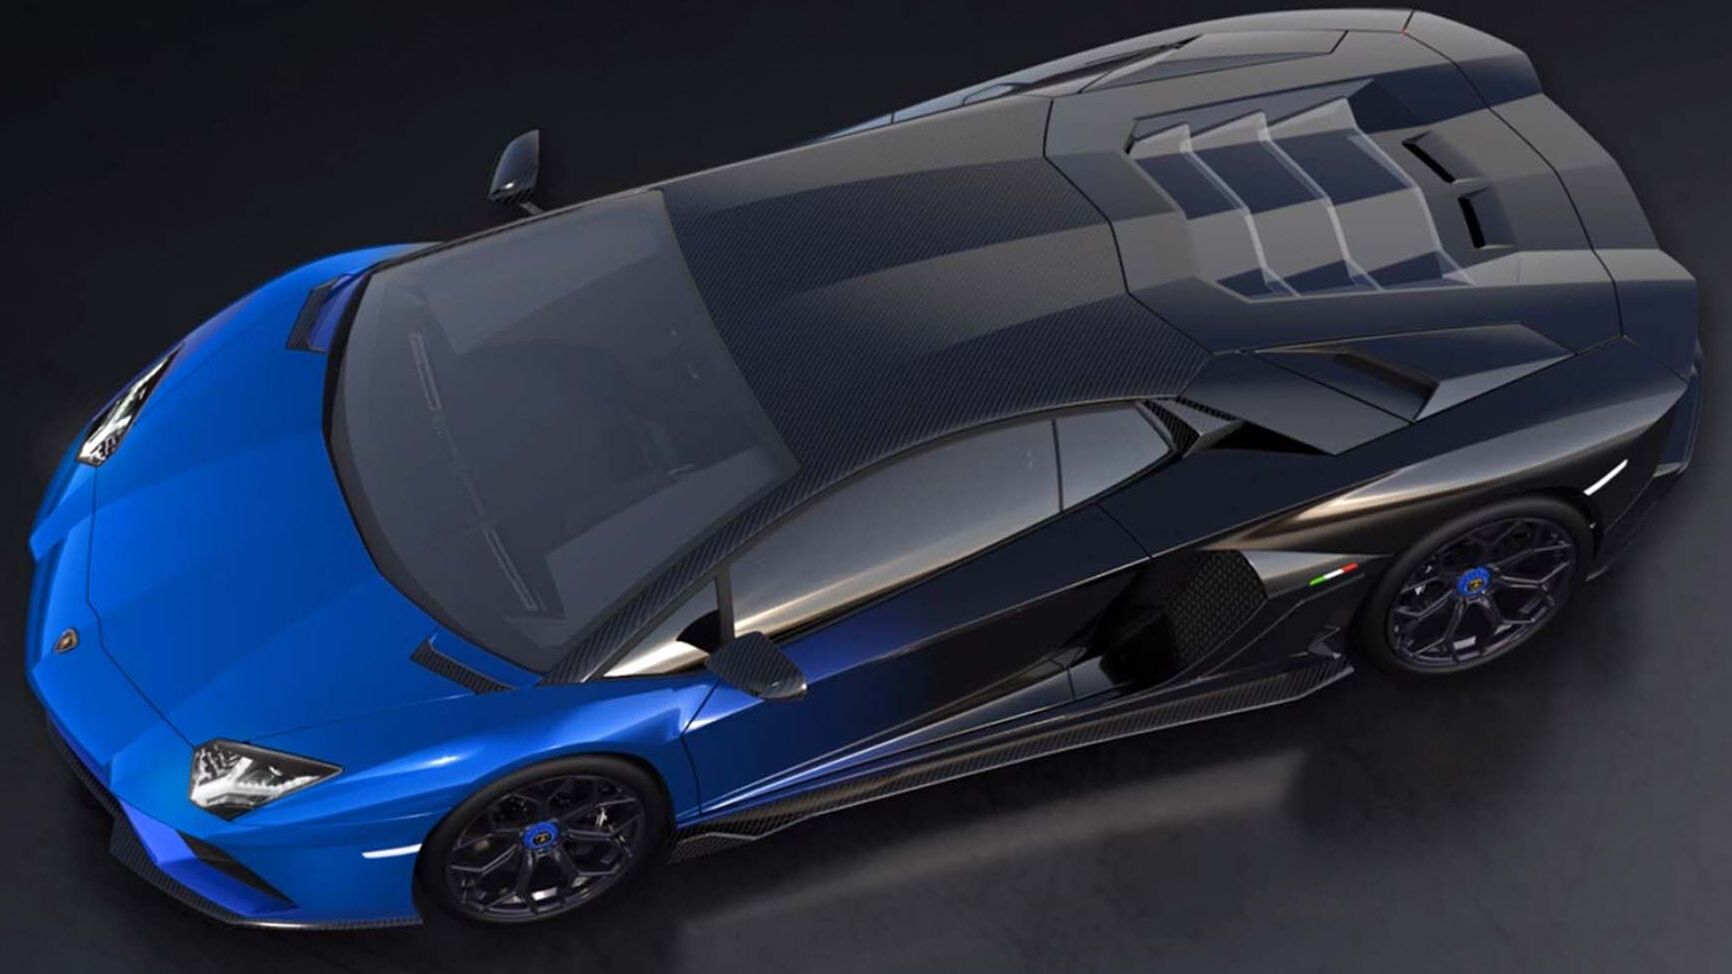 Exclusieve Lamborghini Aventador LP 780-4 Ultimae Coupé wordt geveild met een NFT 1.1 en hoger